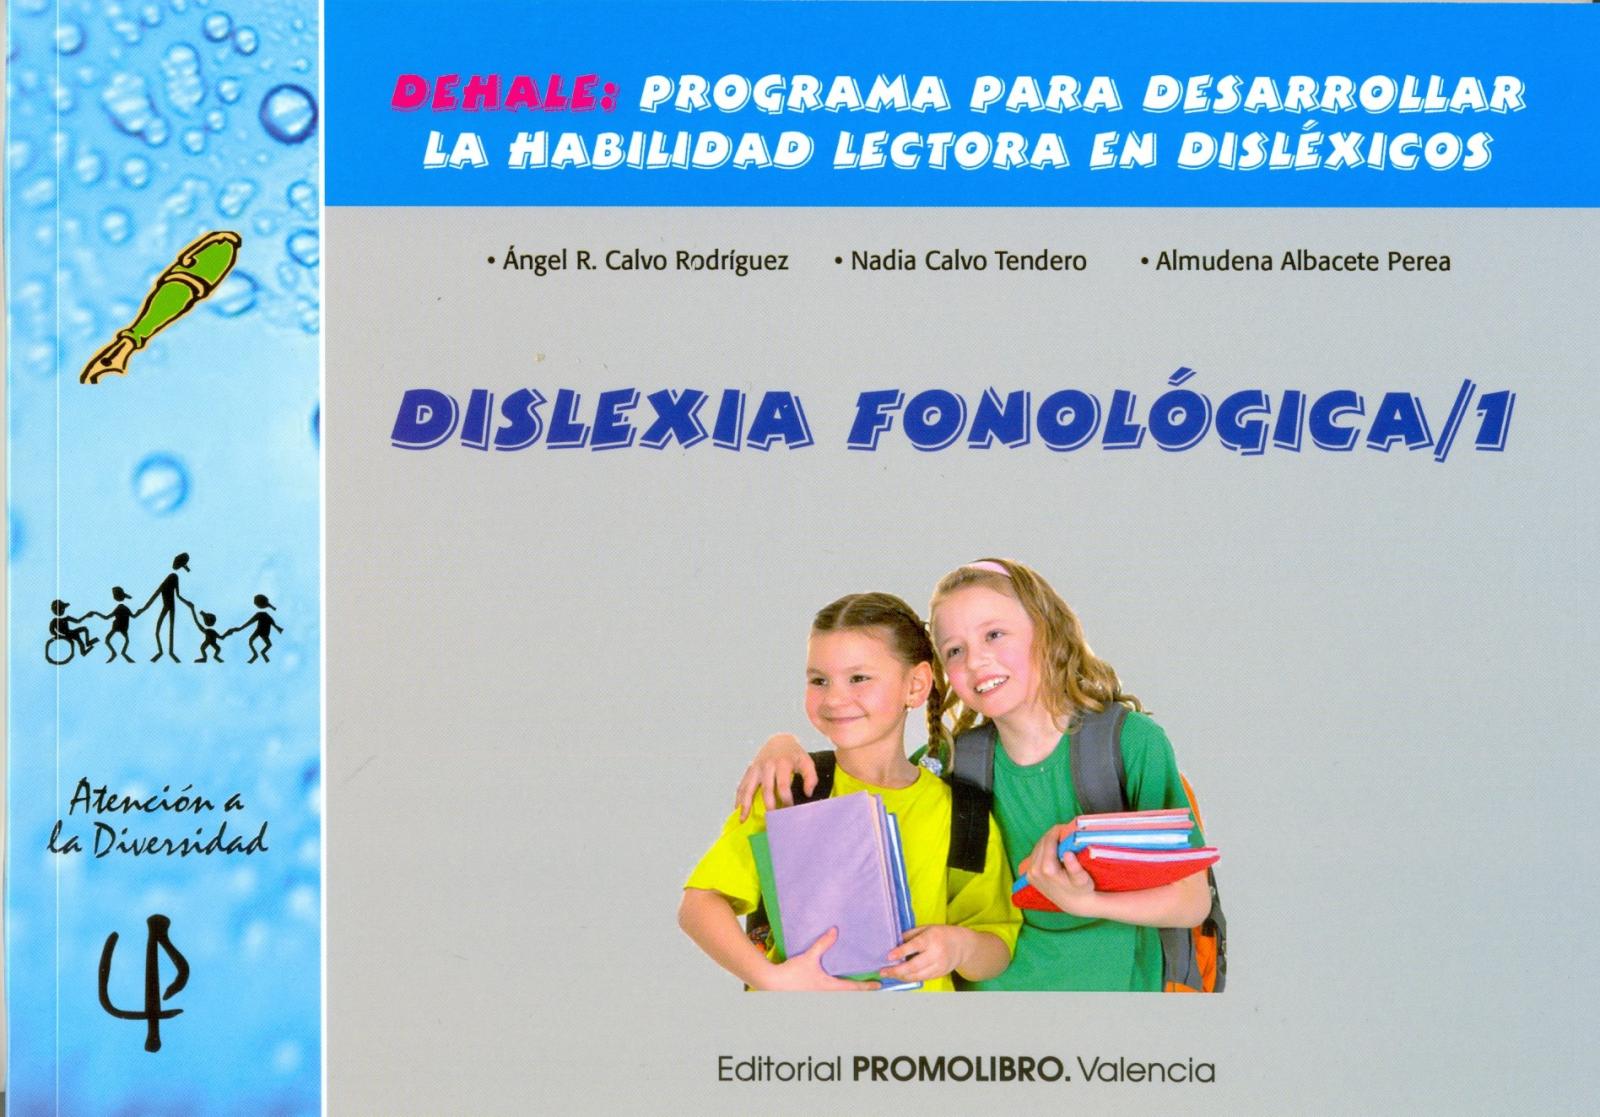 215.- DISLEXIA FONOLÓGICA 1. DEHALE: Programa para desarrollar la habilidad lectora en disléxicos